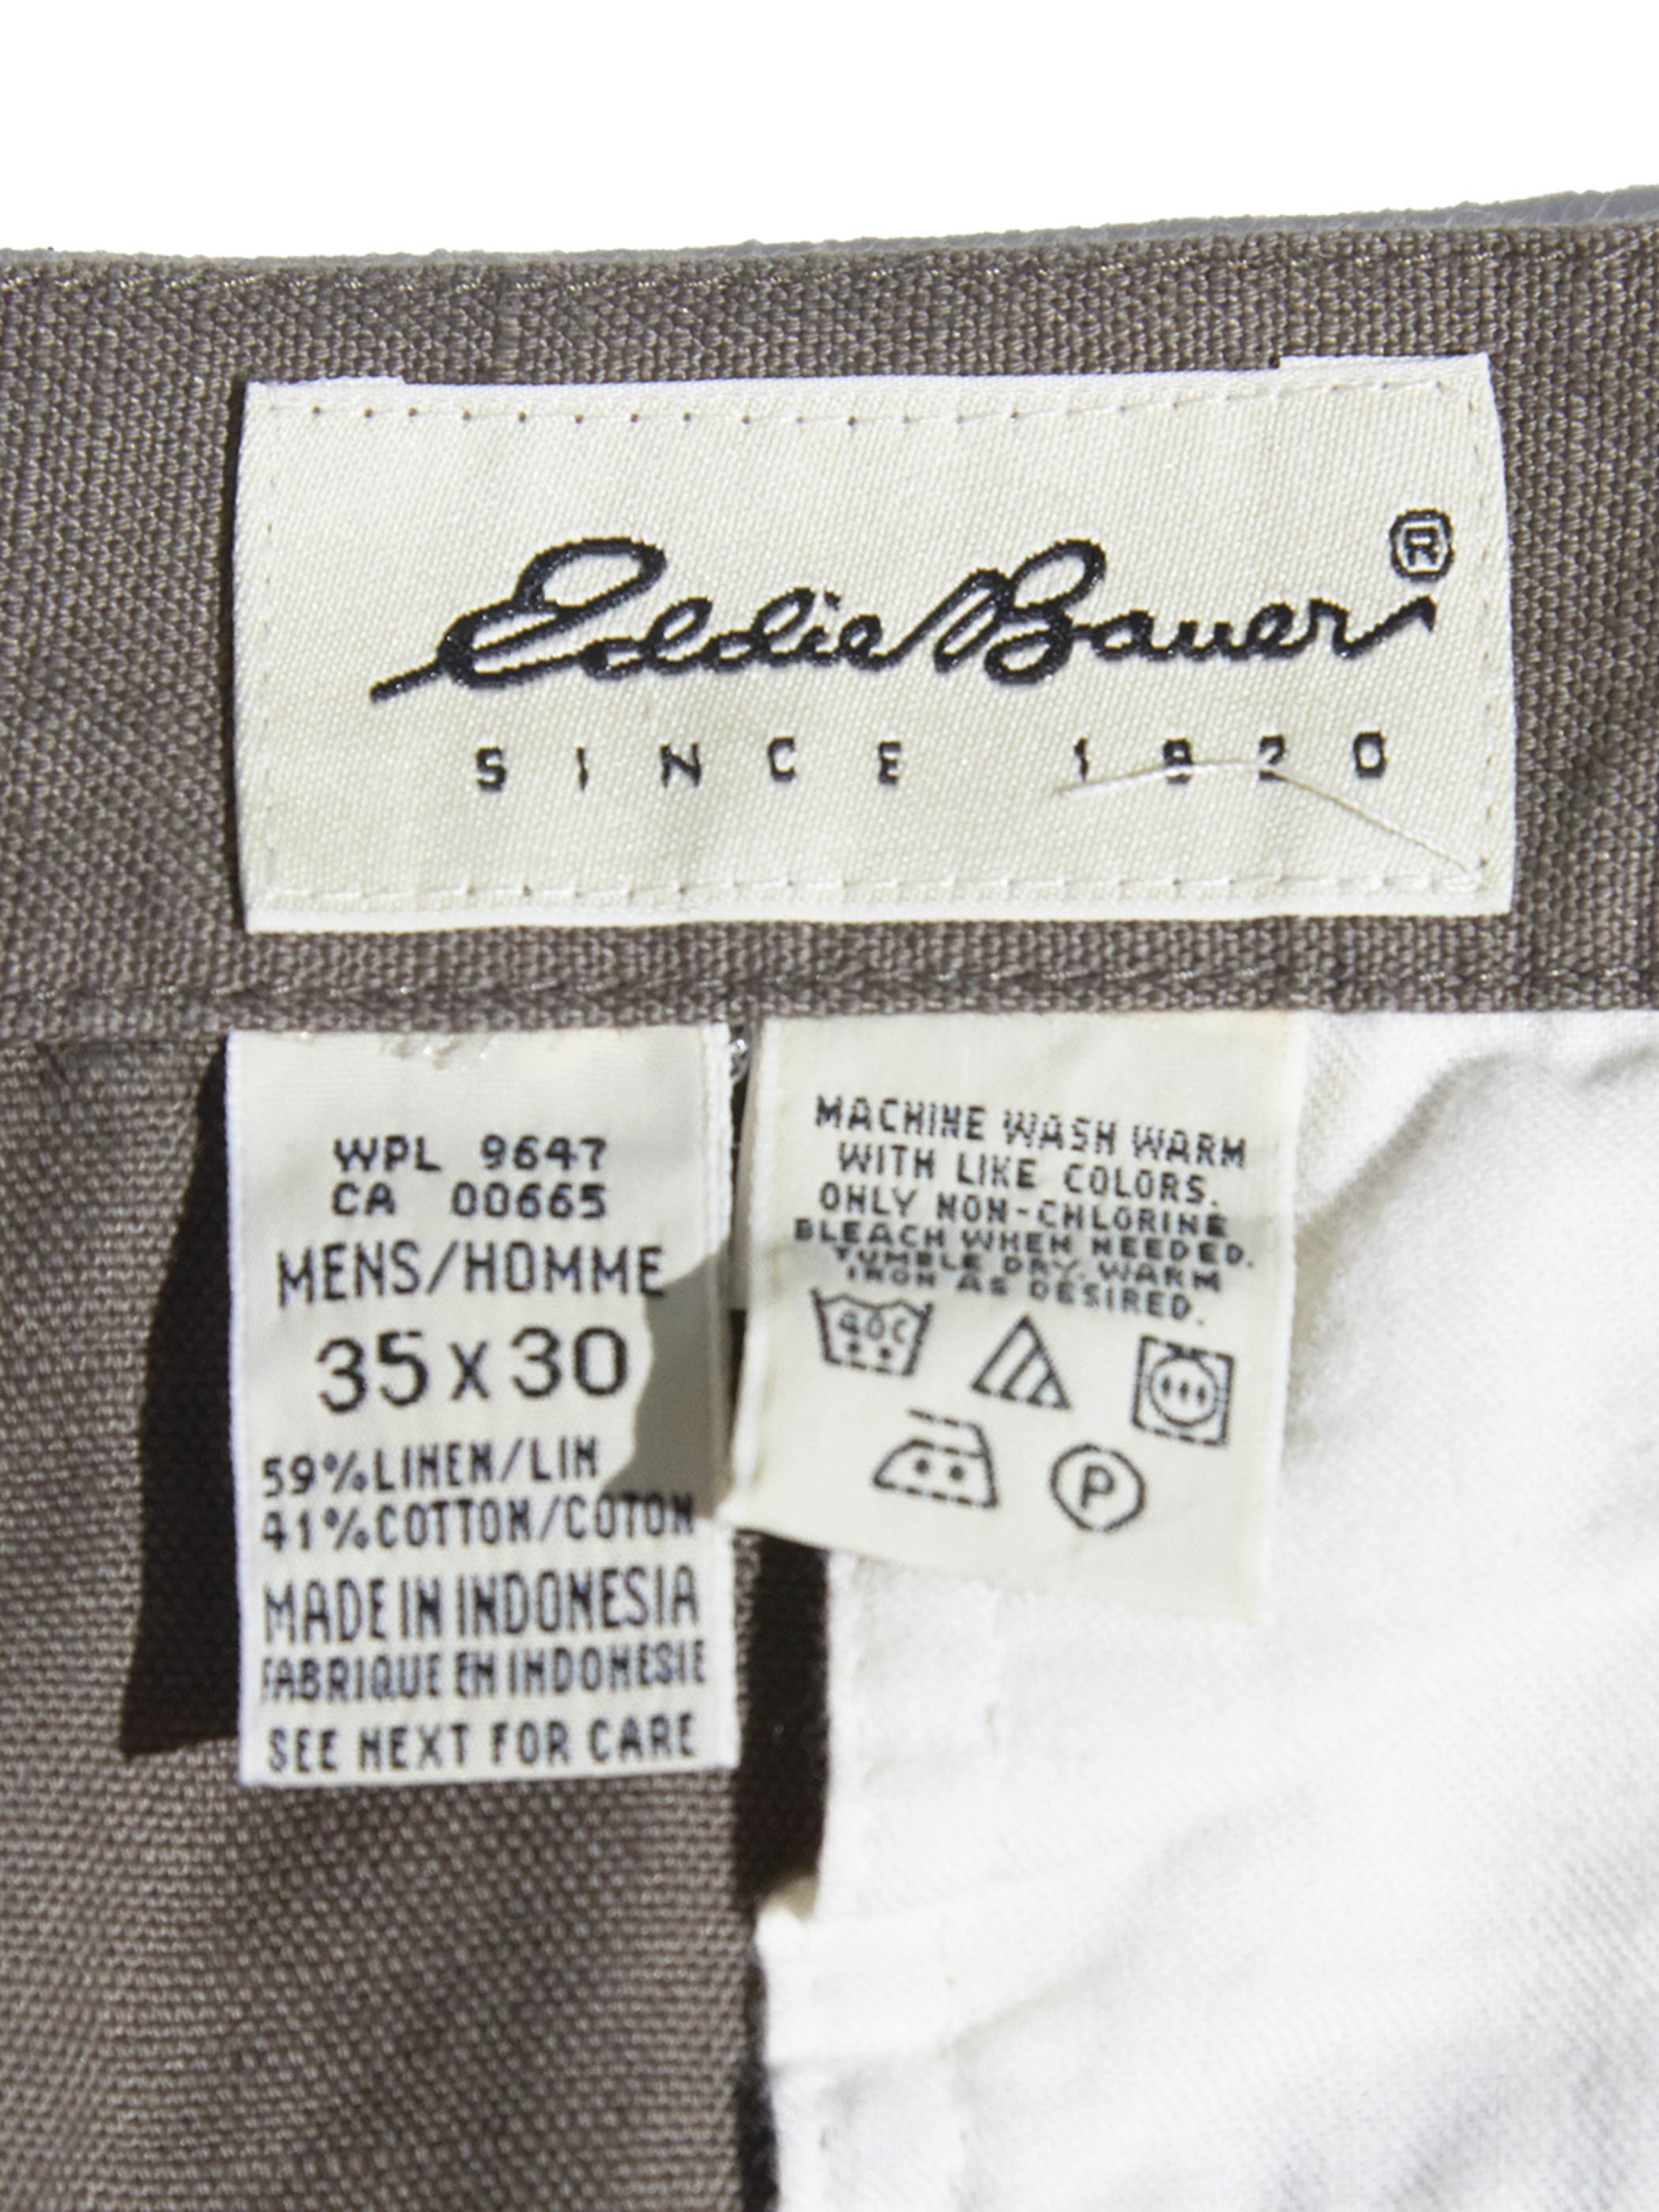 NOS 1990s "Eddie Bauer" cotton / linen tuck pants -KHAKI-